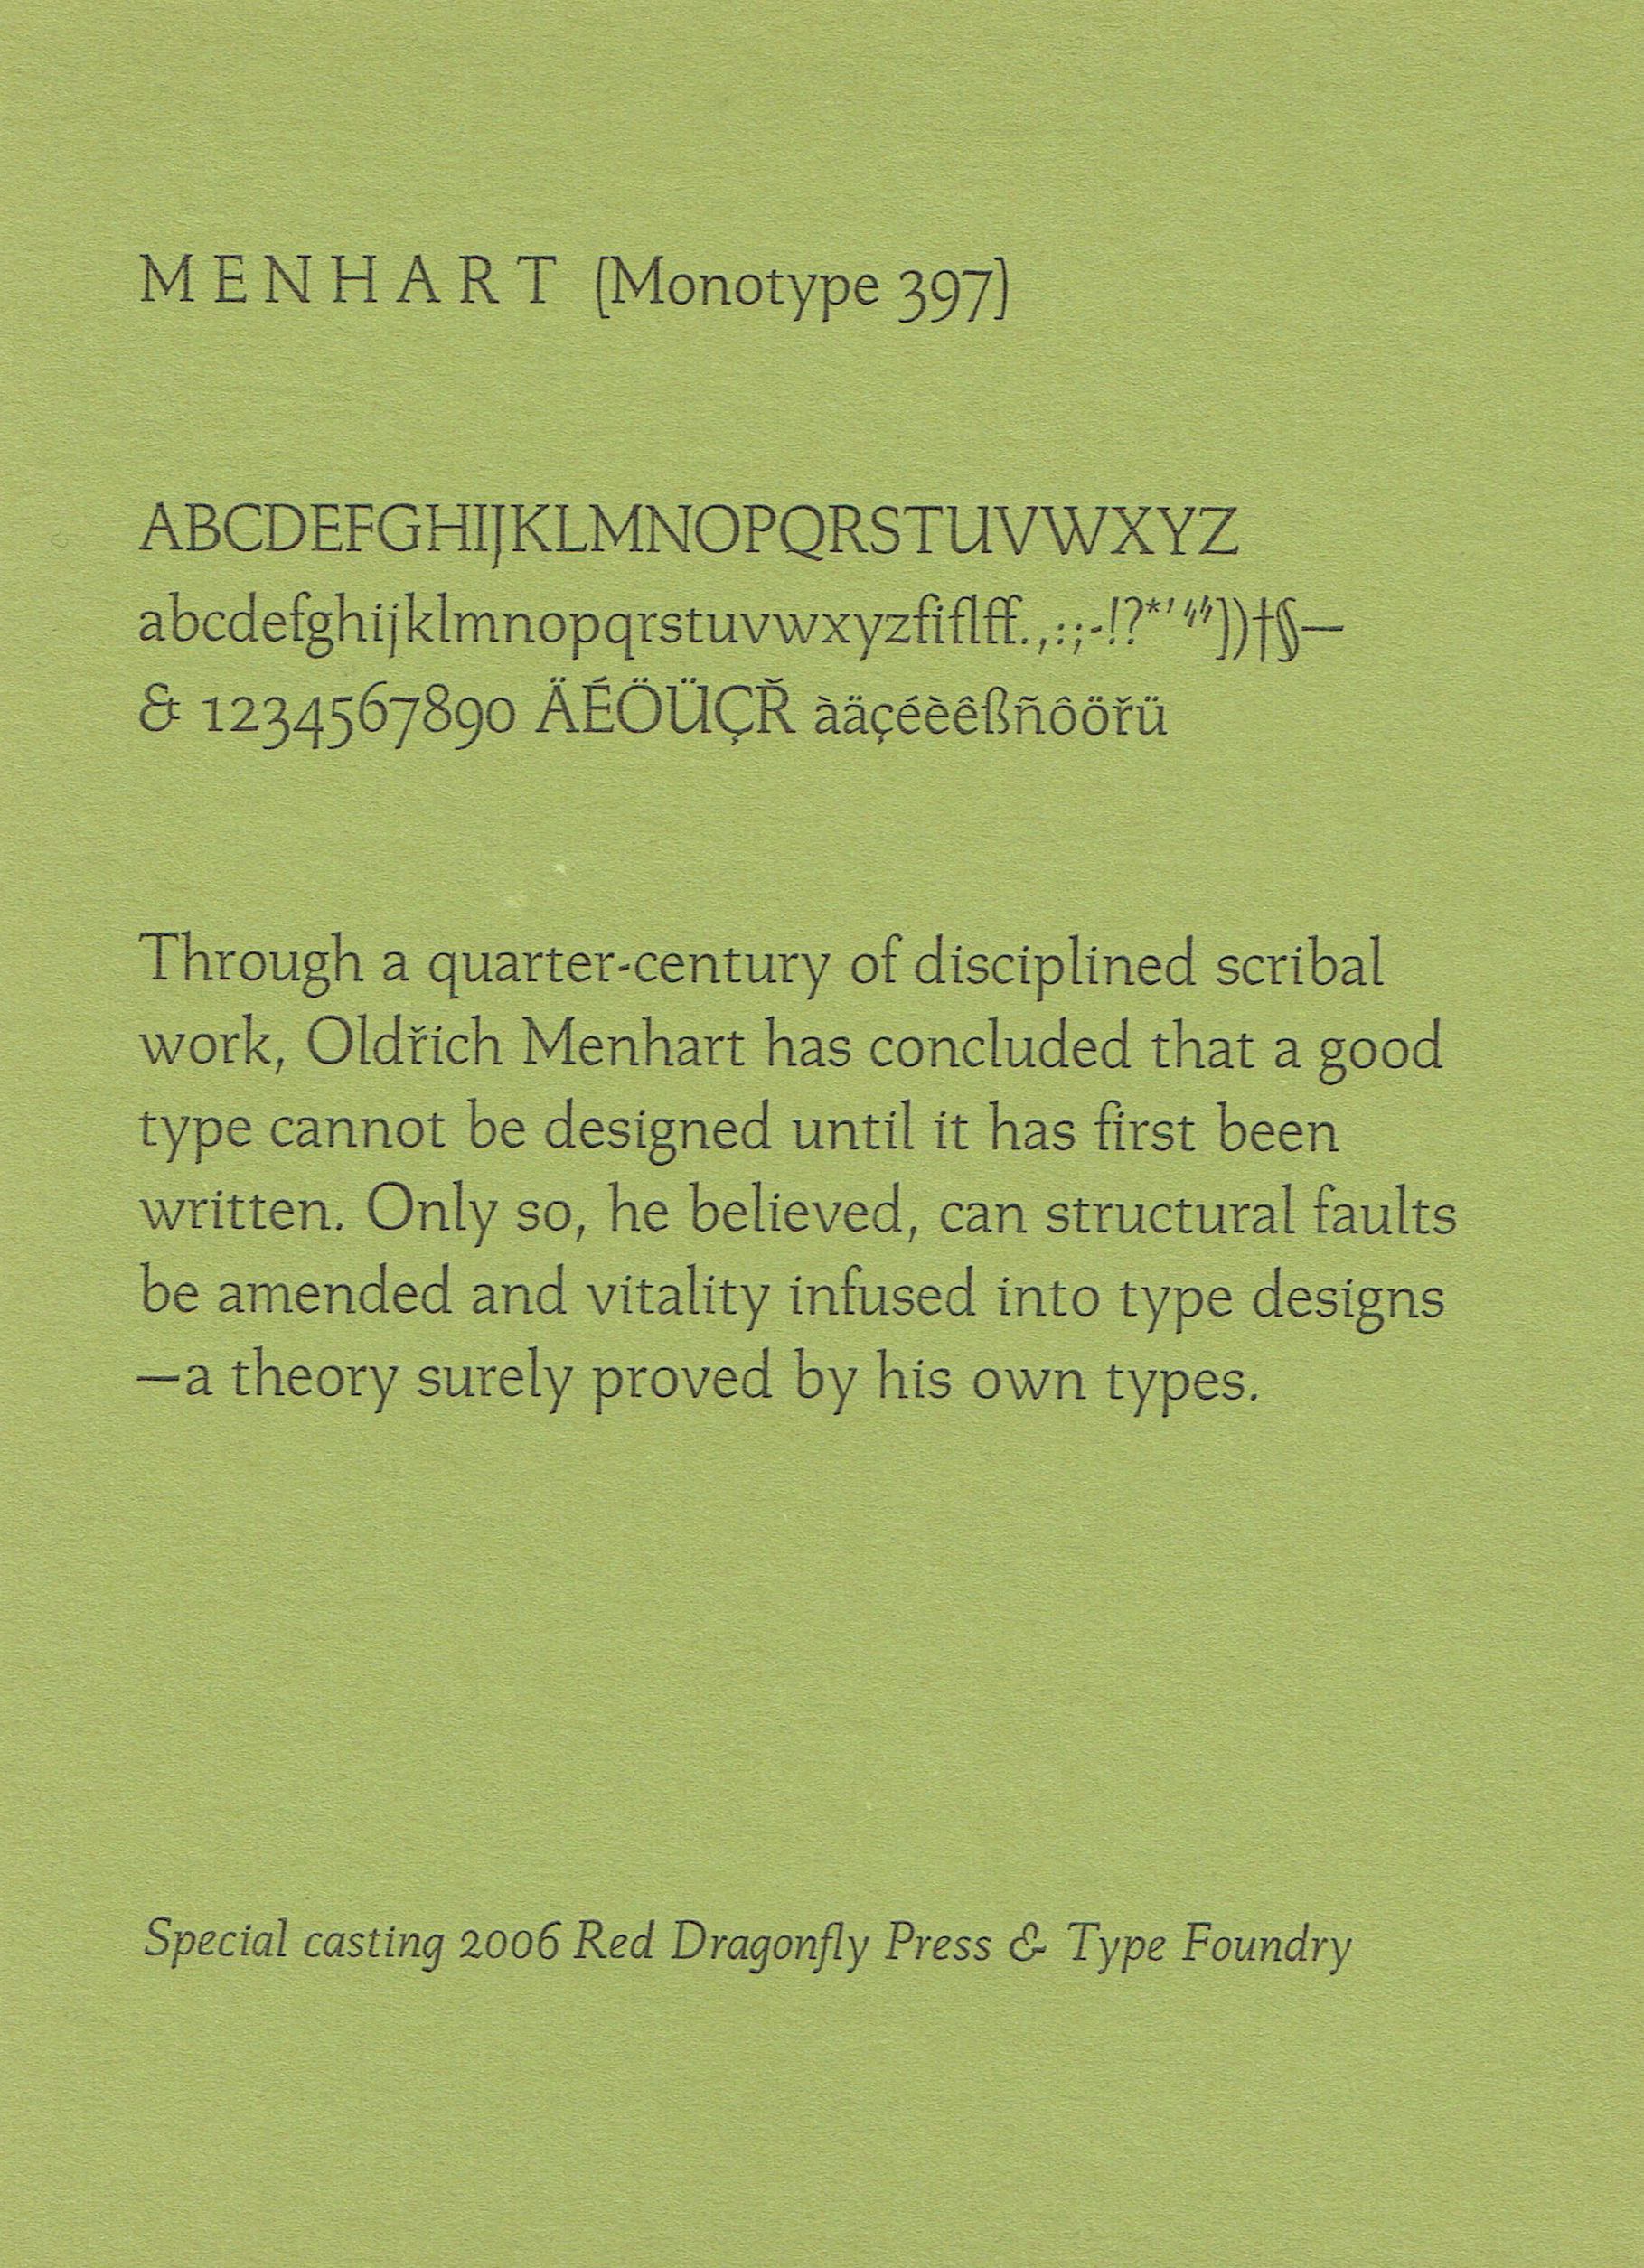 letterpress-007.jpg